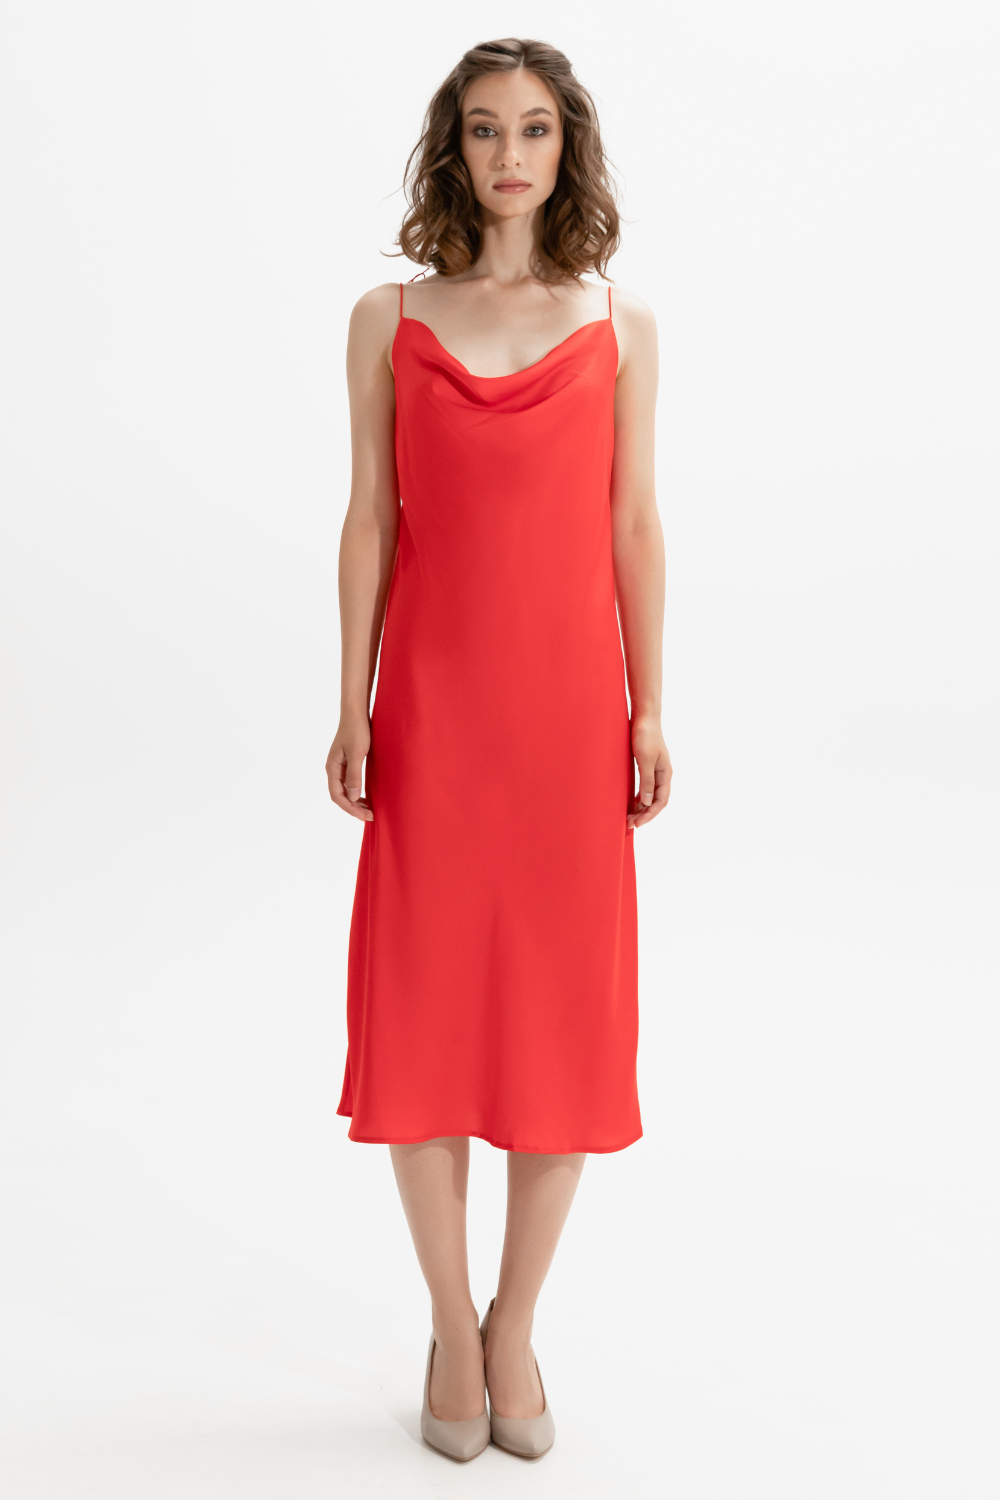 Červené šaty MINT,(Mint), 643